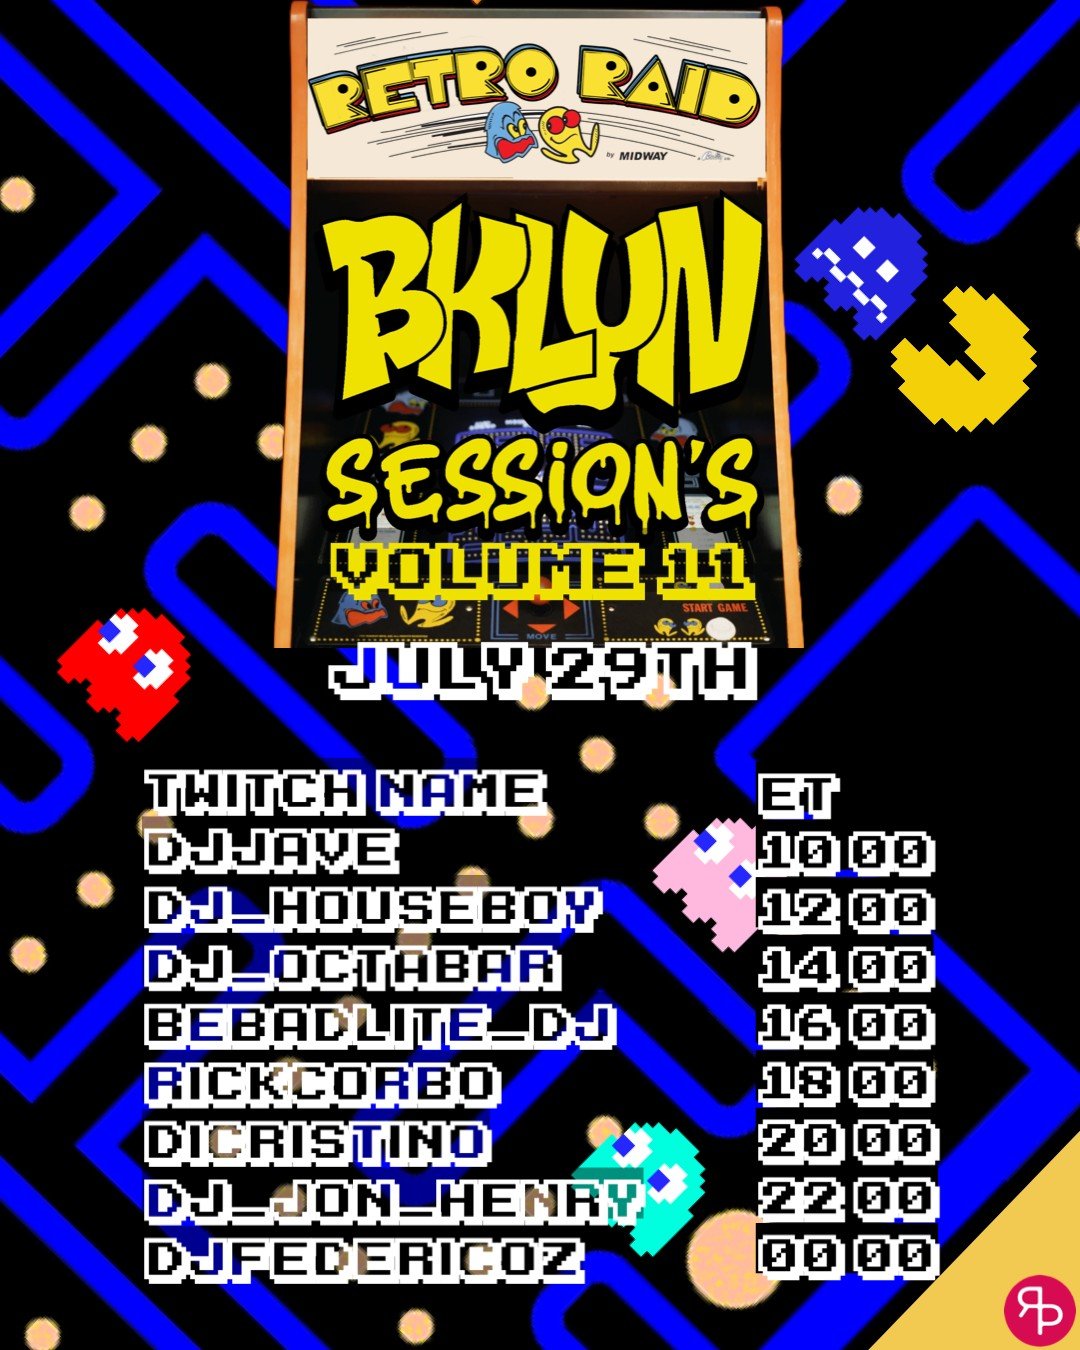 Bklyn Sessions Vol. 11 Retro Raid 1